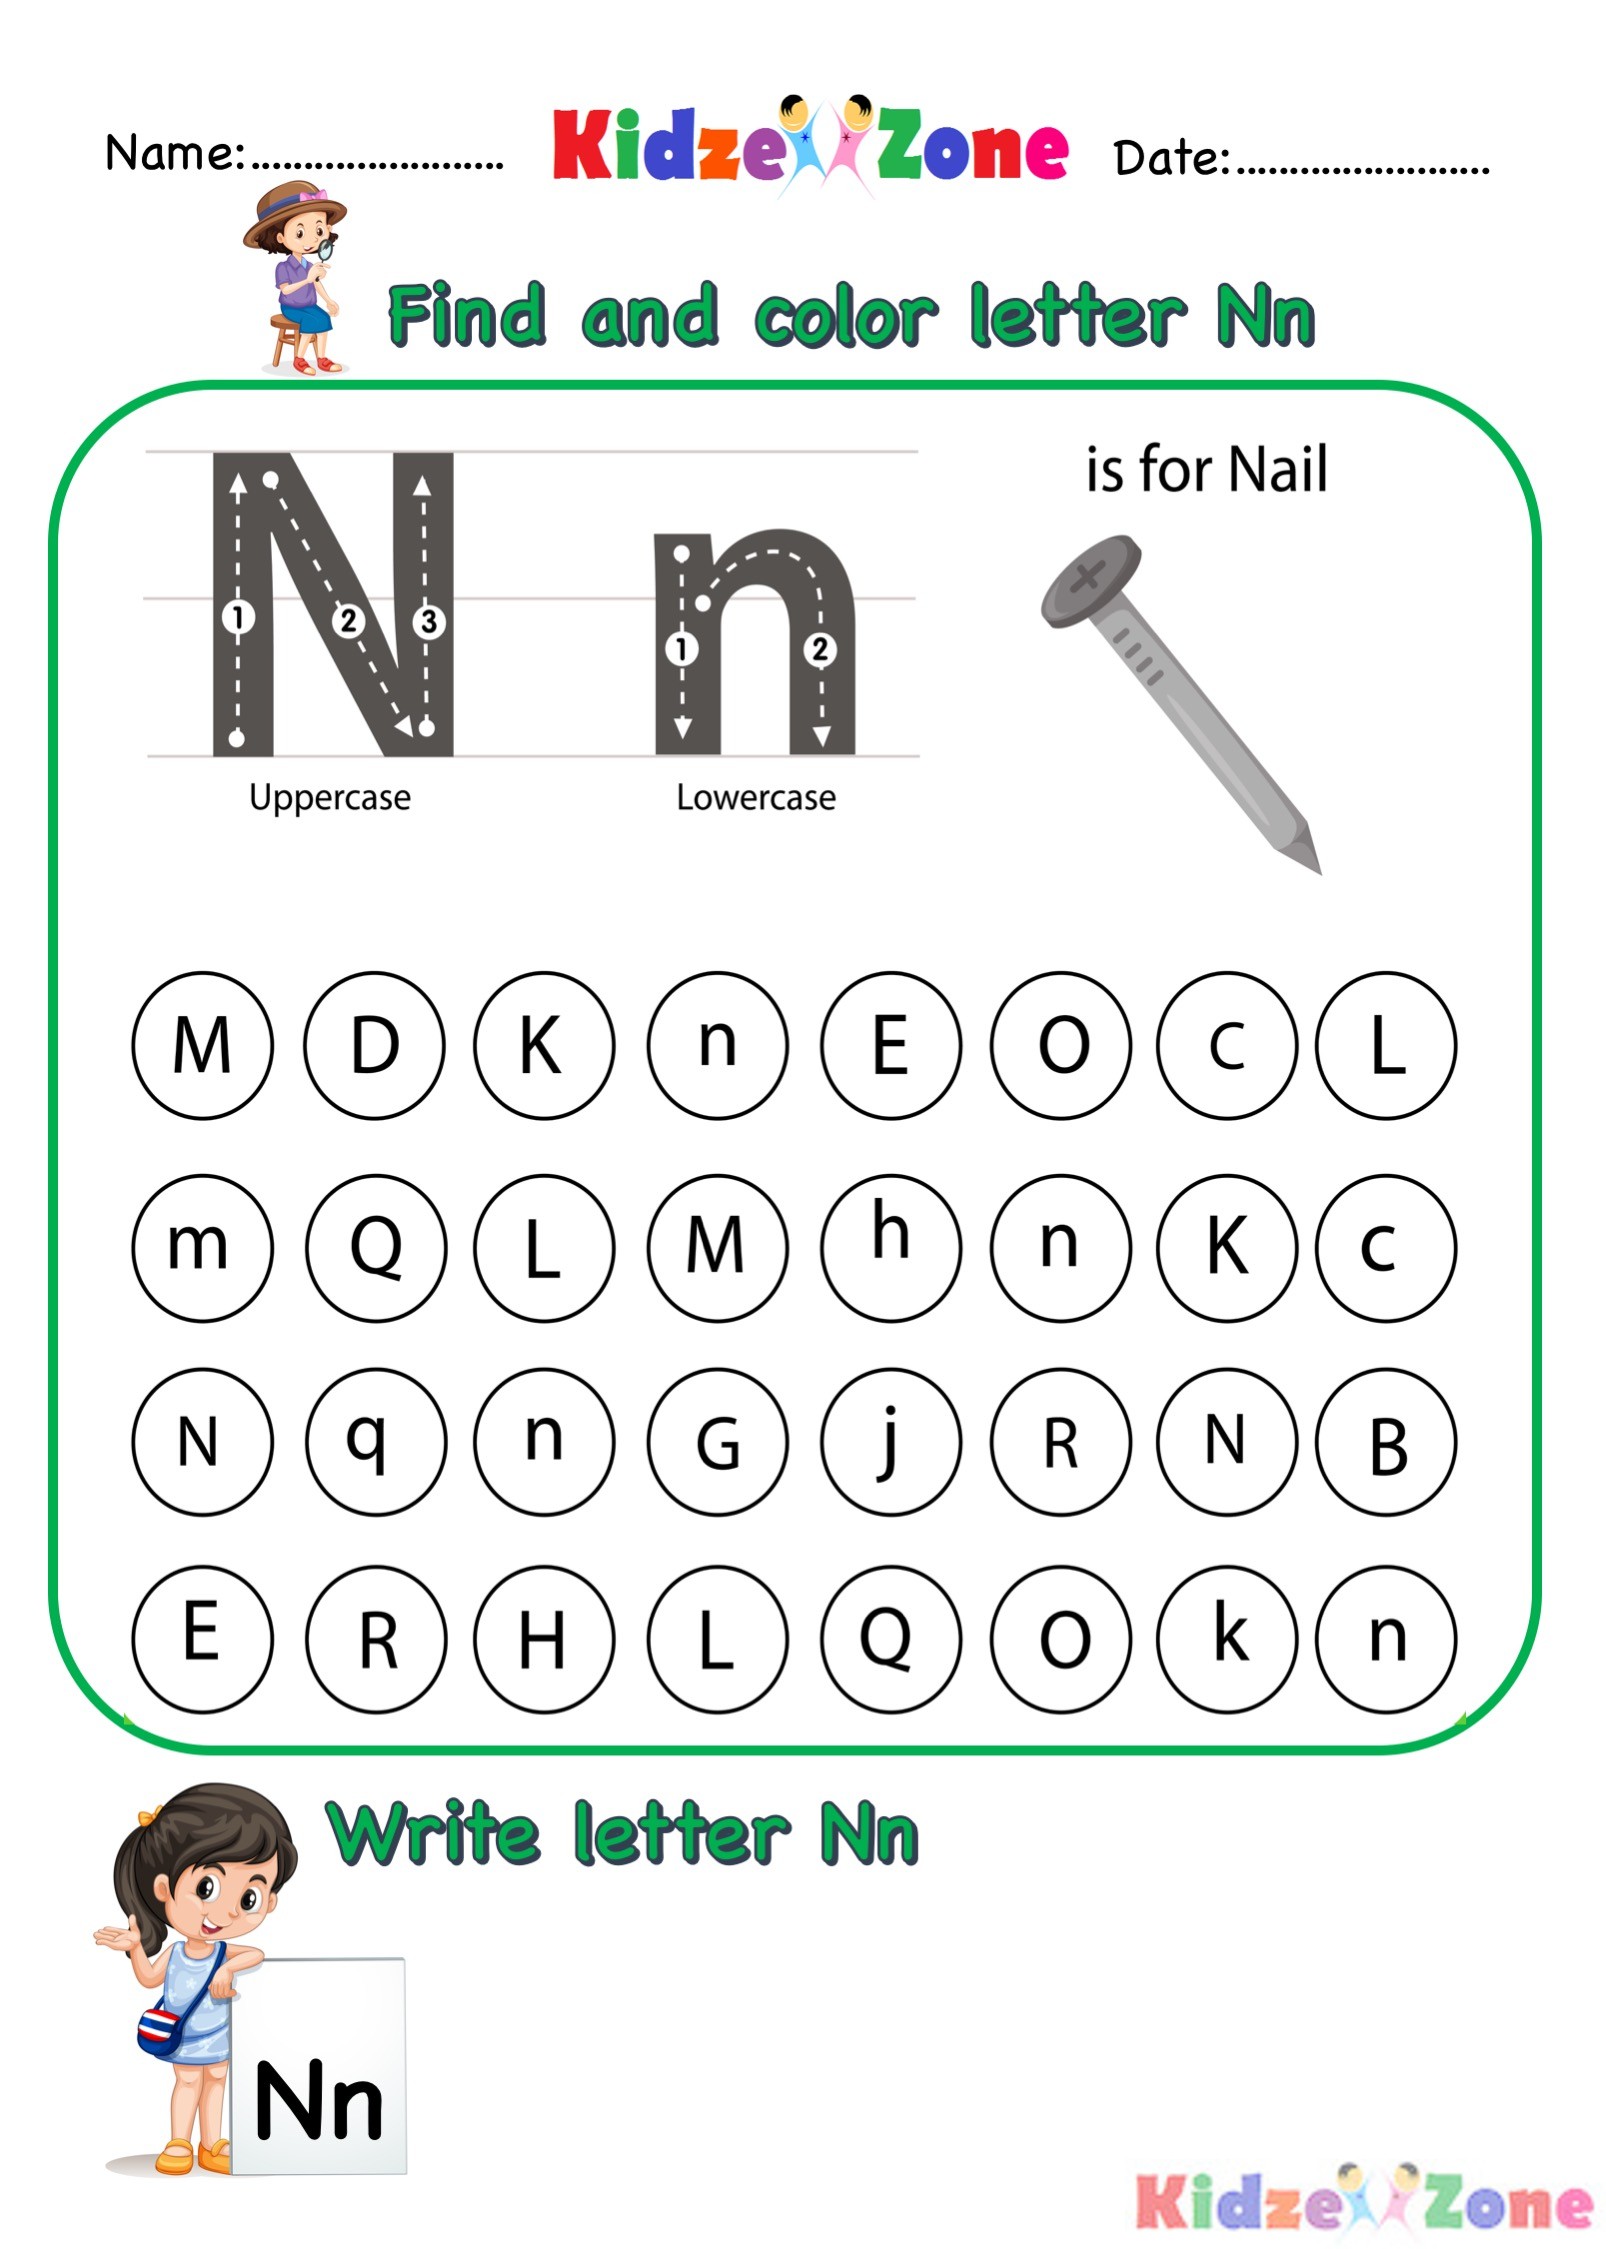 kindergarten-letter-n-worksheets-find-and-color-kidzezone